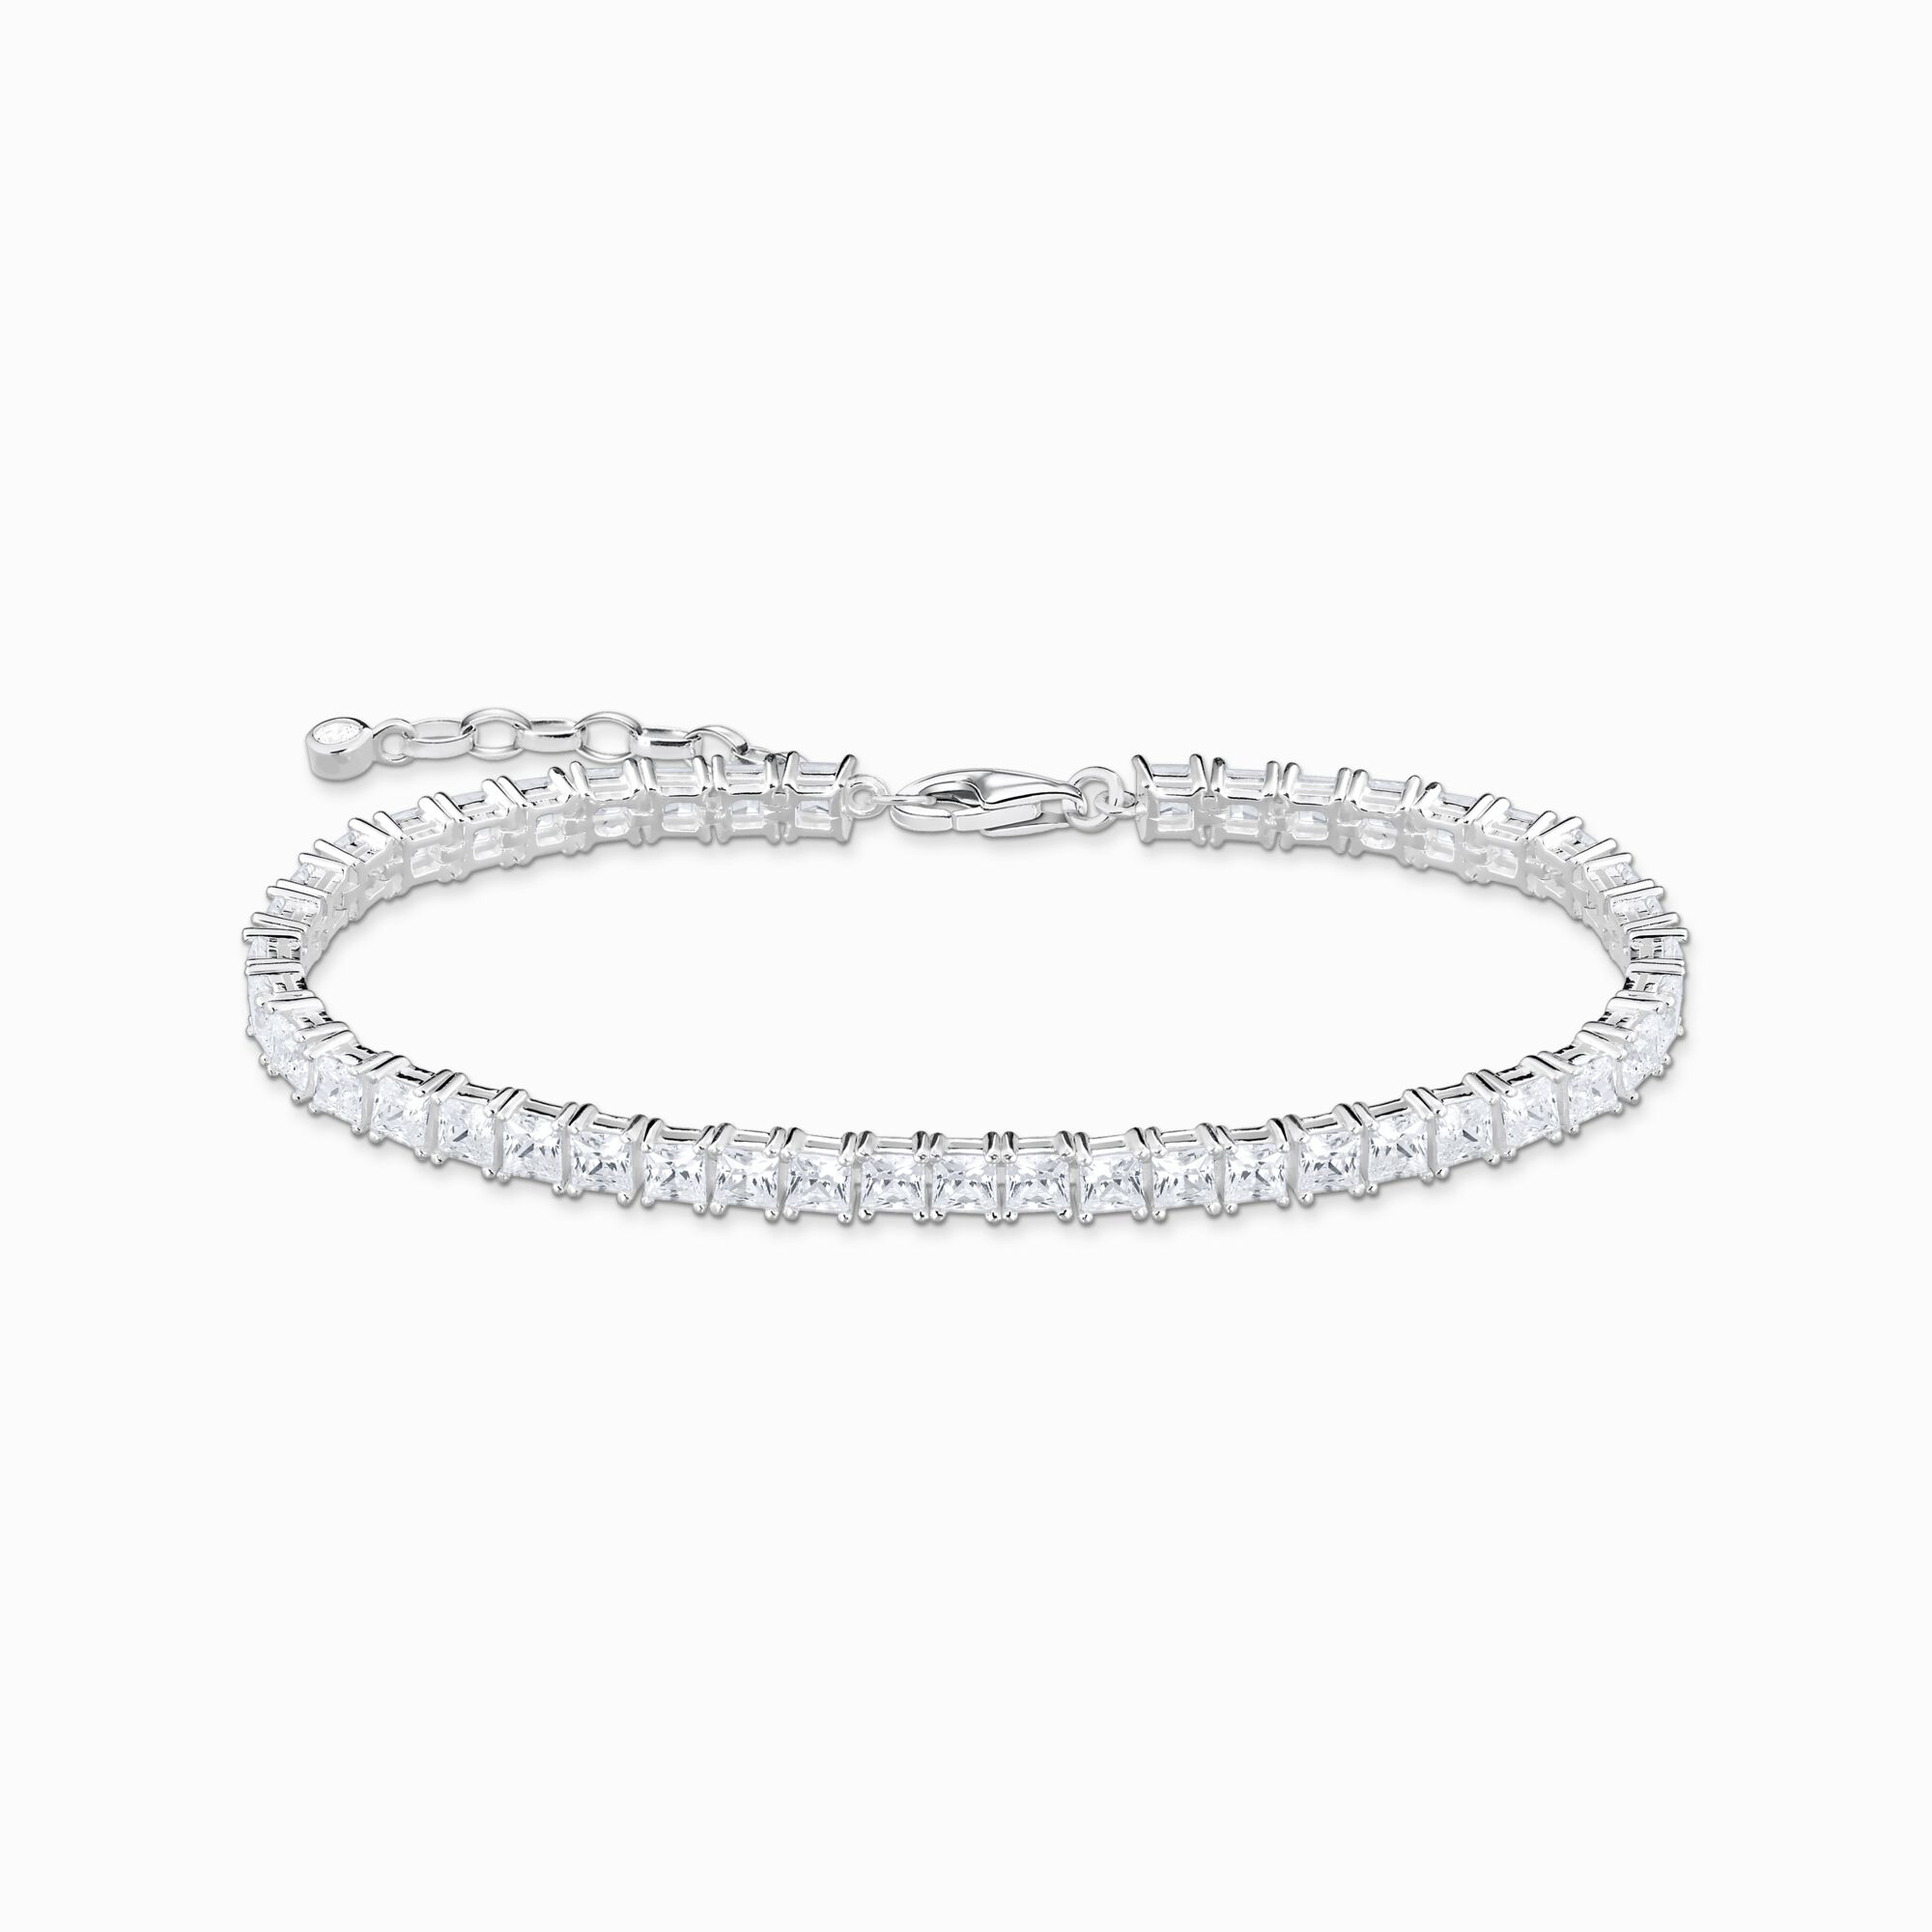 Thomas Sabo + Silver Tennis Bracelet With White Stones